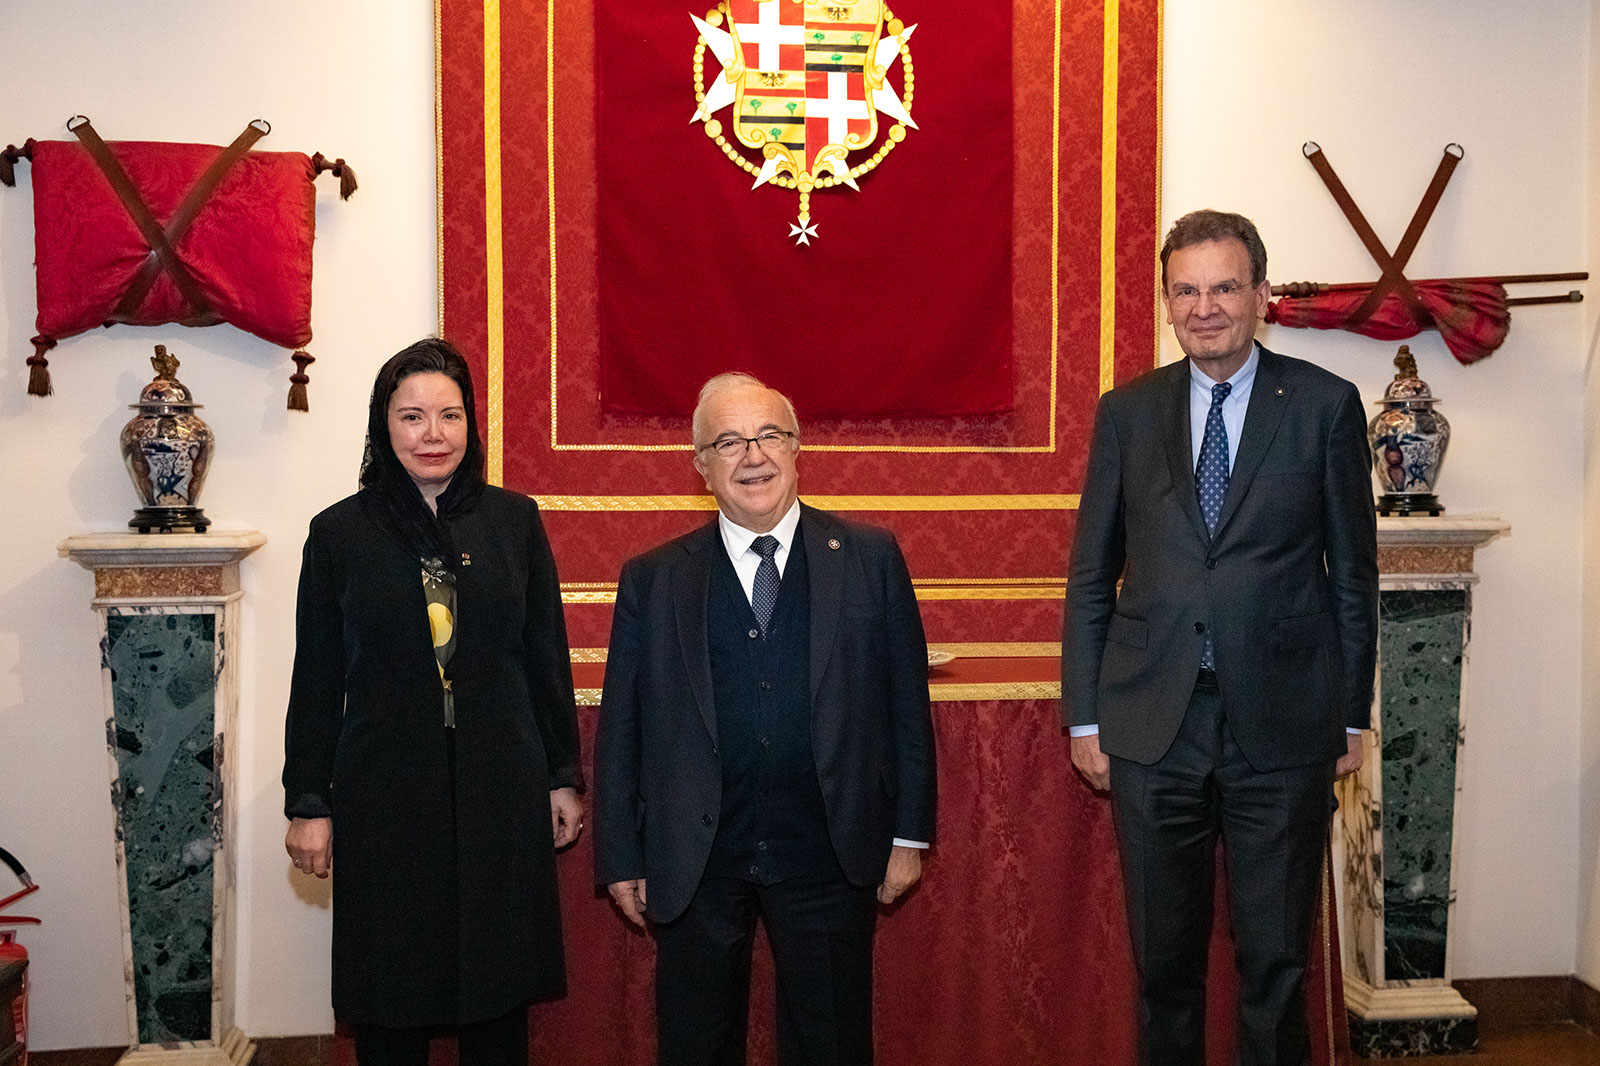 Visite de l’Ambassadeur de Sa Majesté le Roi du Maroc près l’Ordre de Malte au palais Magistral à Rome